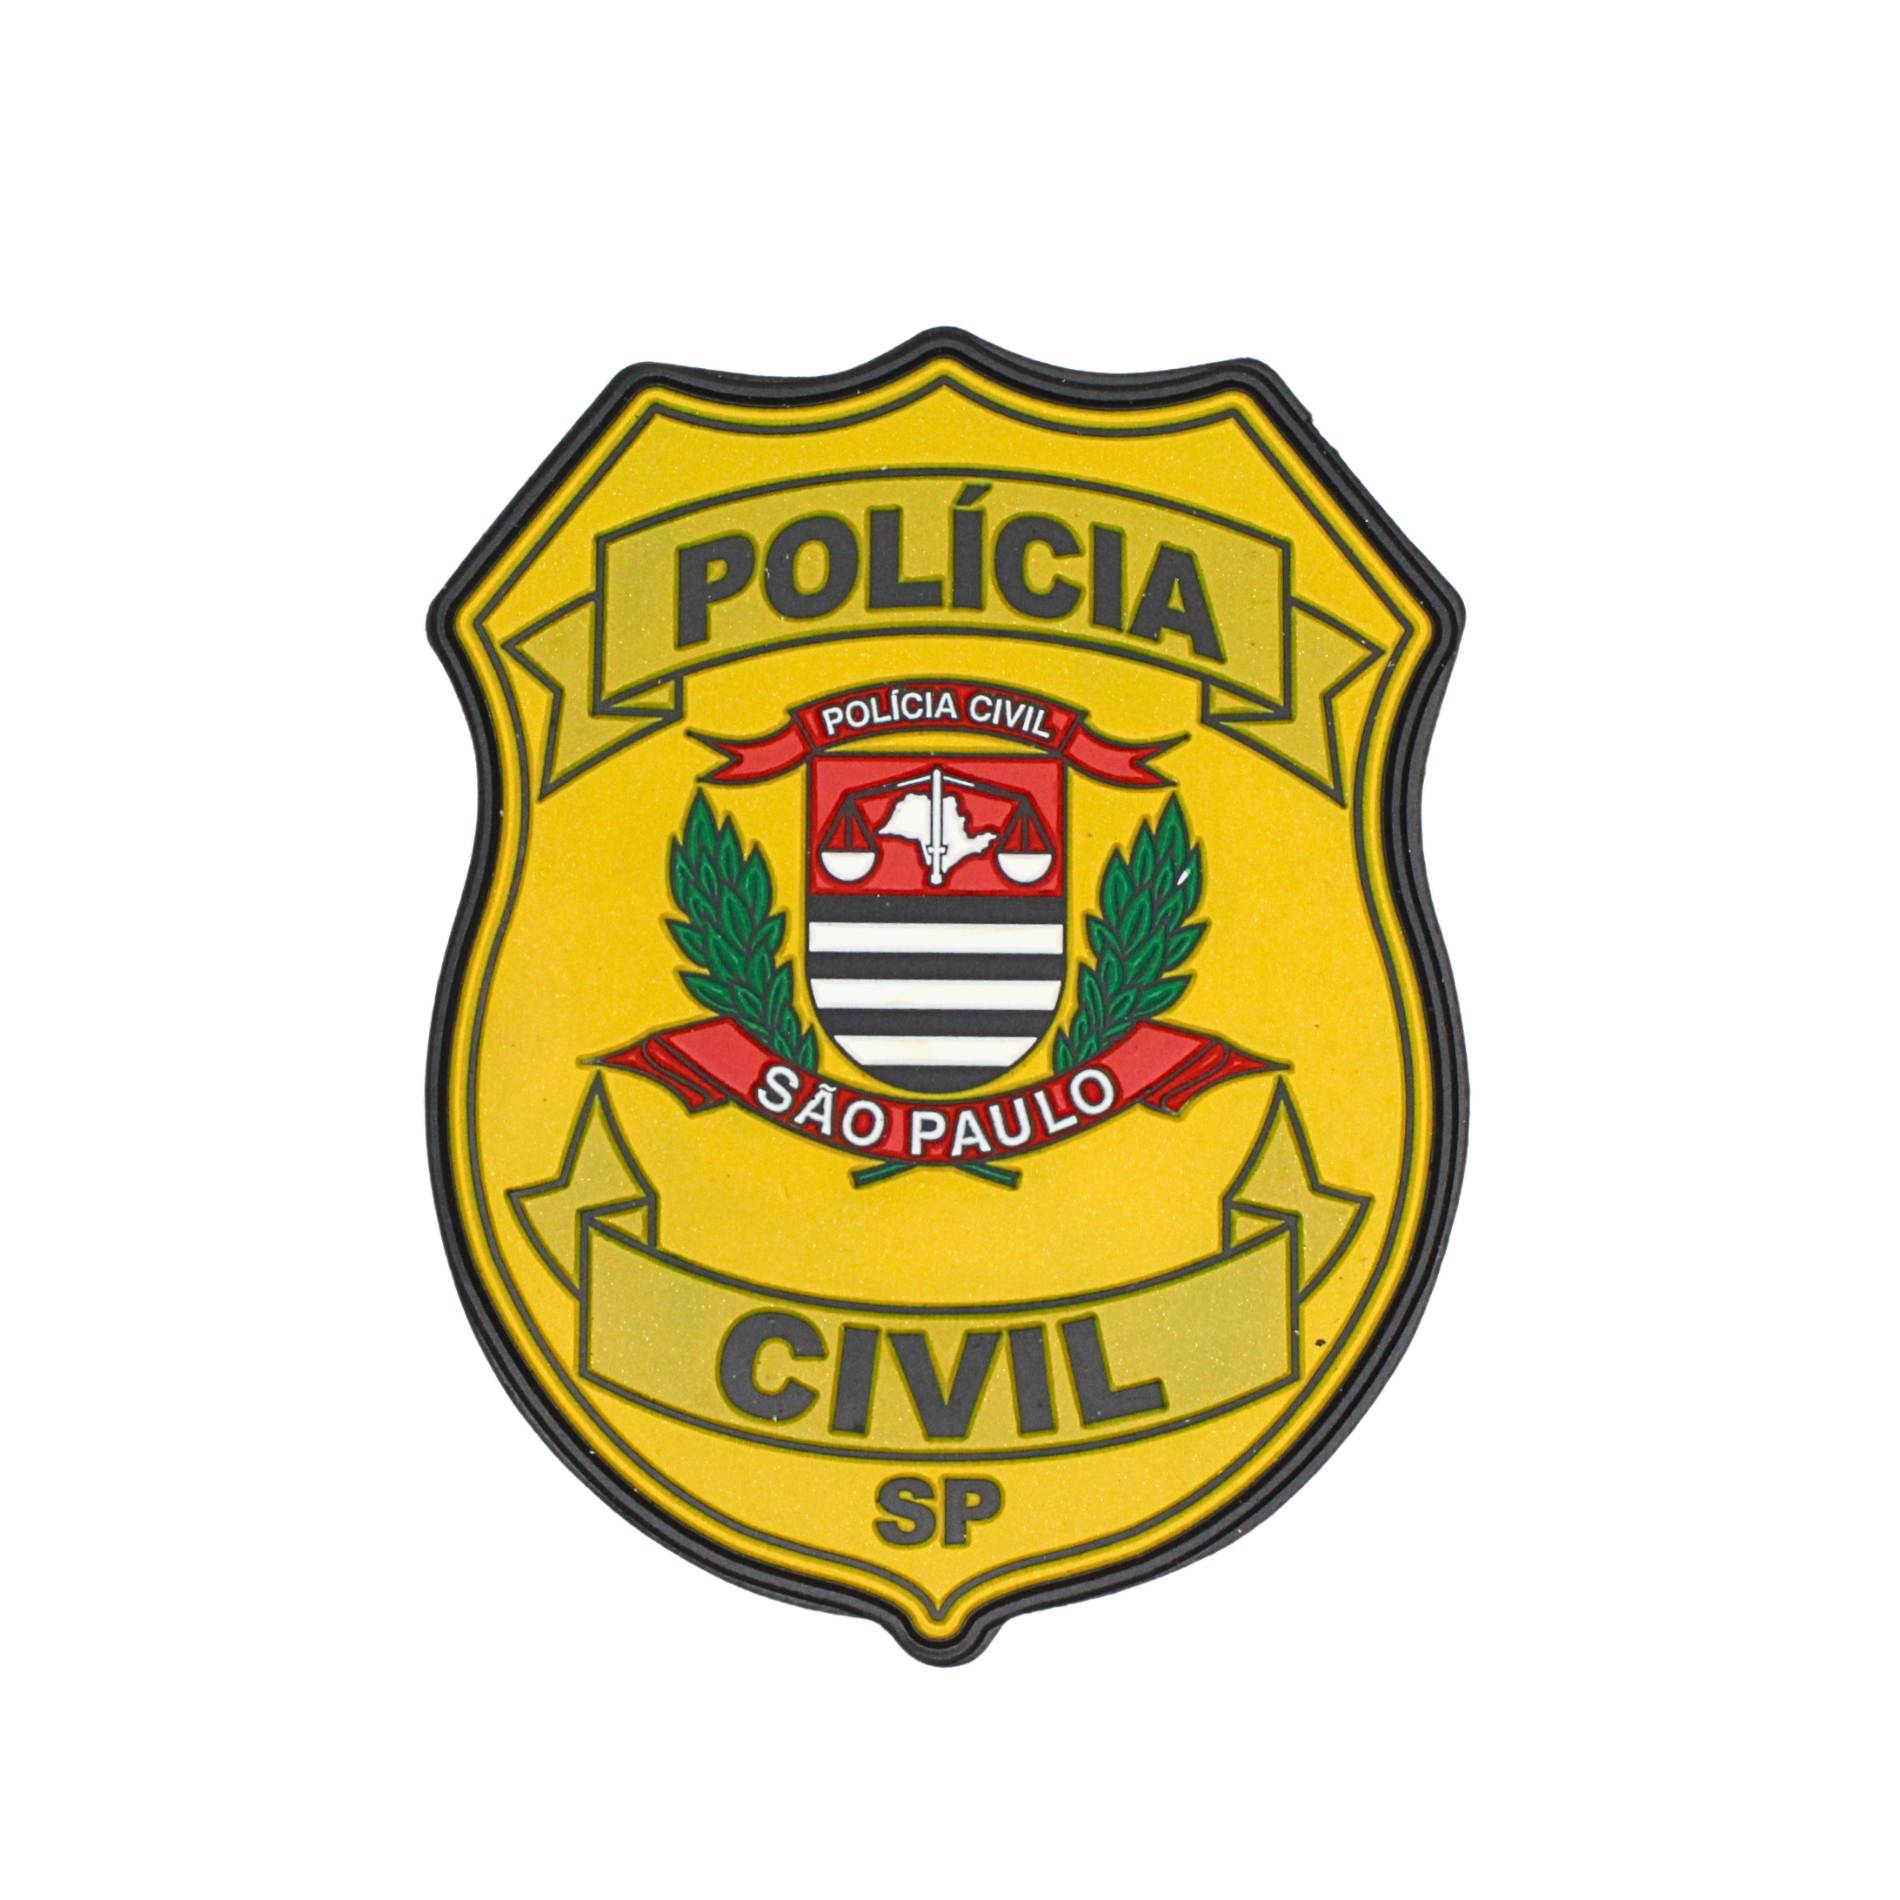 PATCH EMBORRACHADO BRASÃO POLÍCIA CIVIL/ SP - COLORIDO